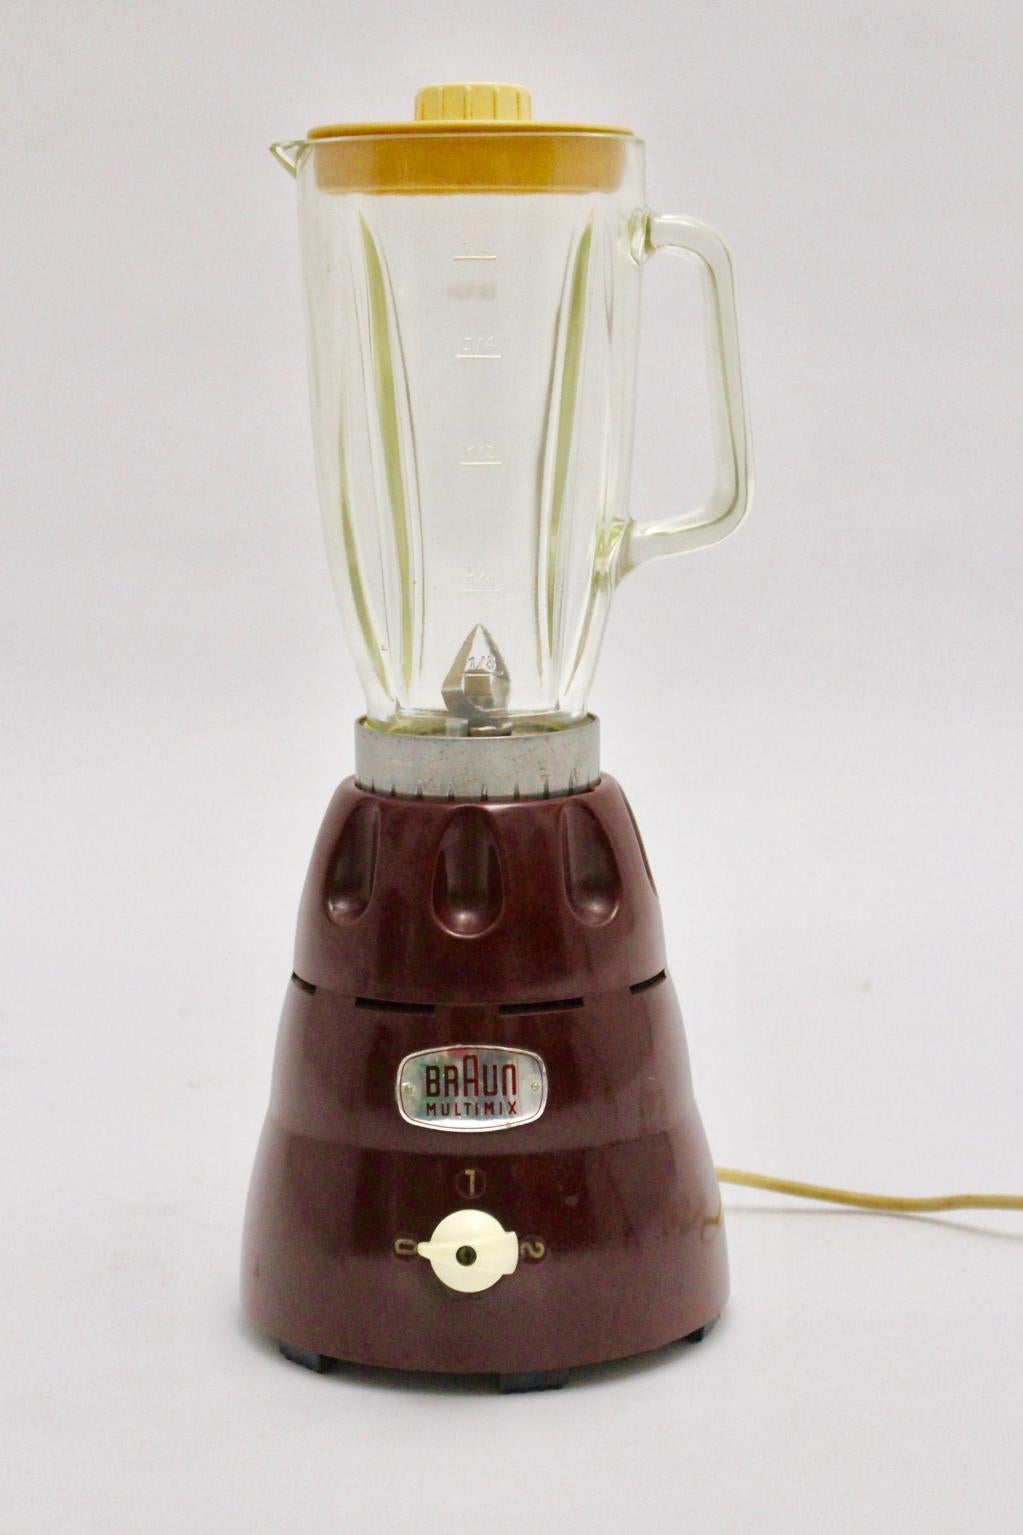 Ce Multimix entièrement fonctionnel a été conçu et réalisé par Braun AG, Frankfurt /Main.
Le mélangeur était composé d'une base en bakélite rouge-brun, d'une cruche en verre incolore et d'un couvercle ivoire.
En outre, le mélangeur présente un